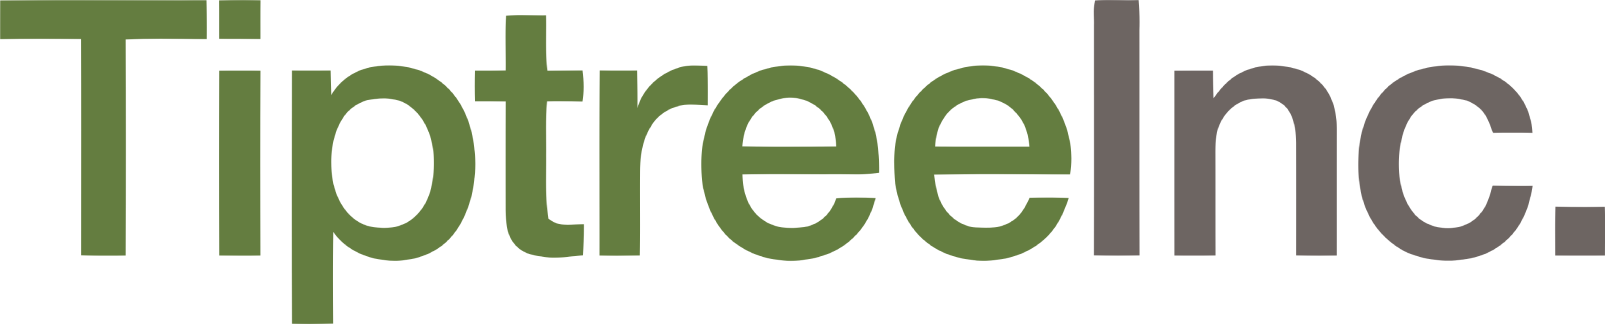 Tiptree logo large (transparent PNG)